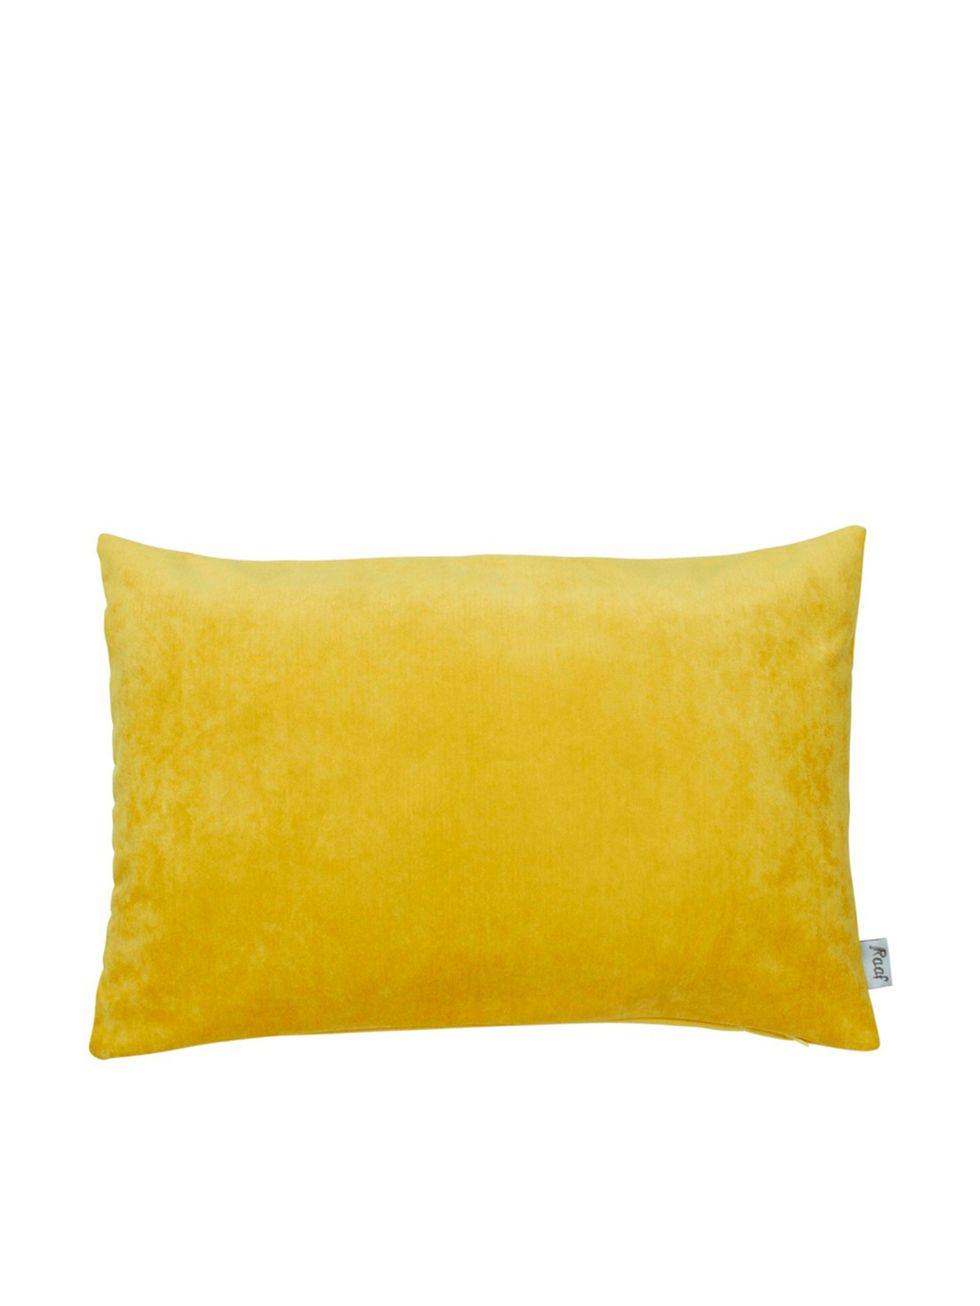 Yellow, Cushion, Pillow, Rectangle, Throw pillow, Cylinder, 